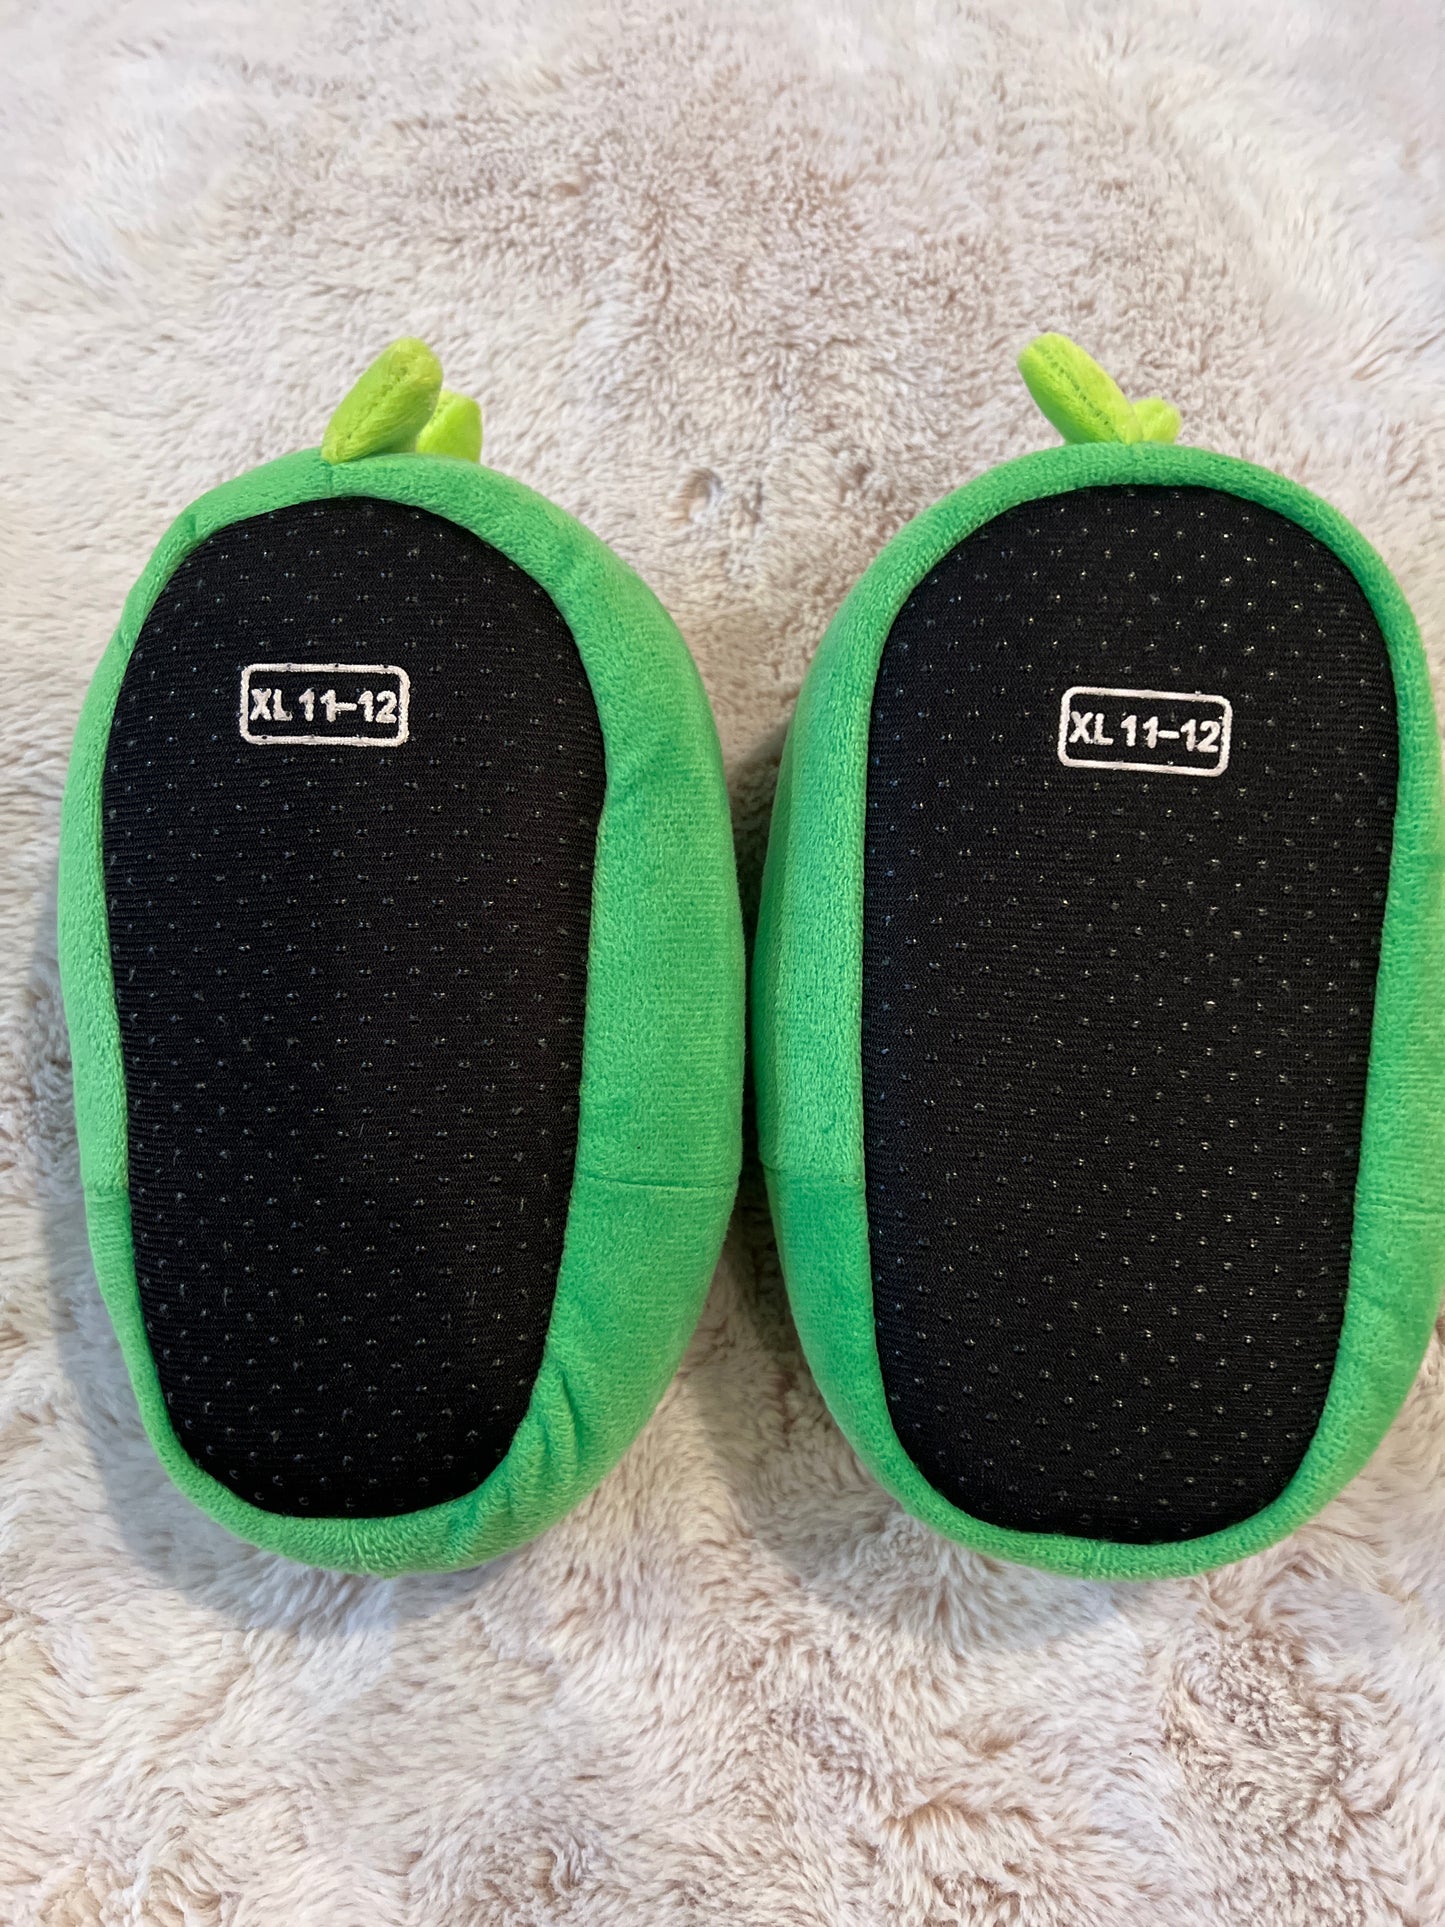 PJ Masks slippers XL 11-12